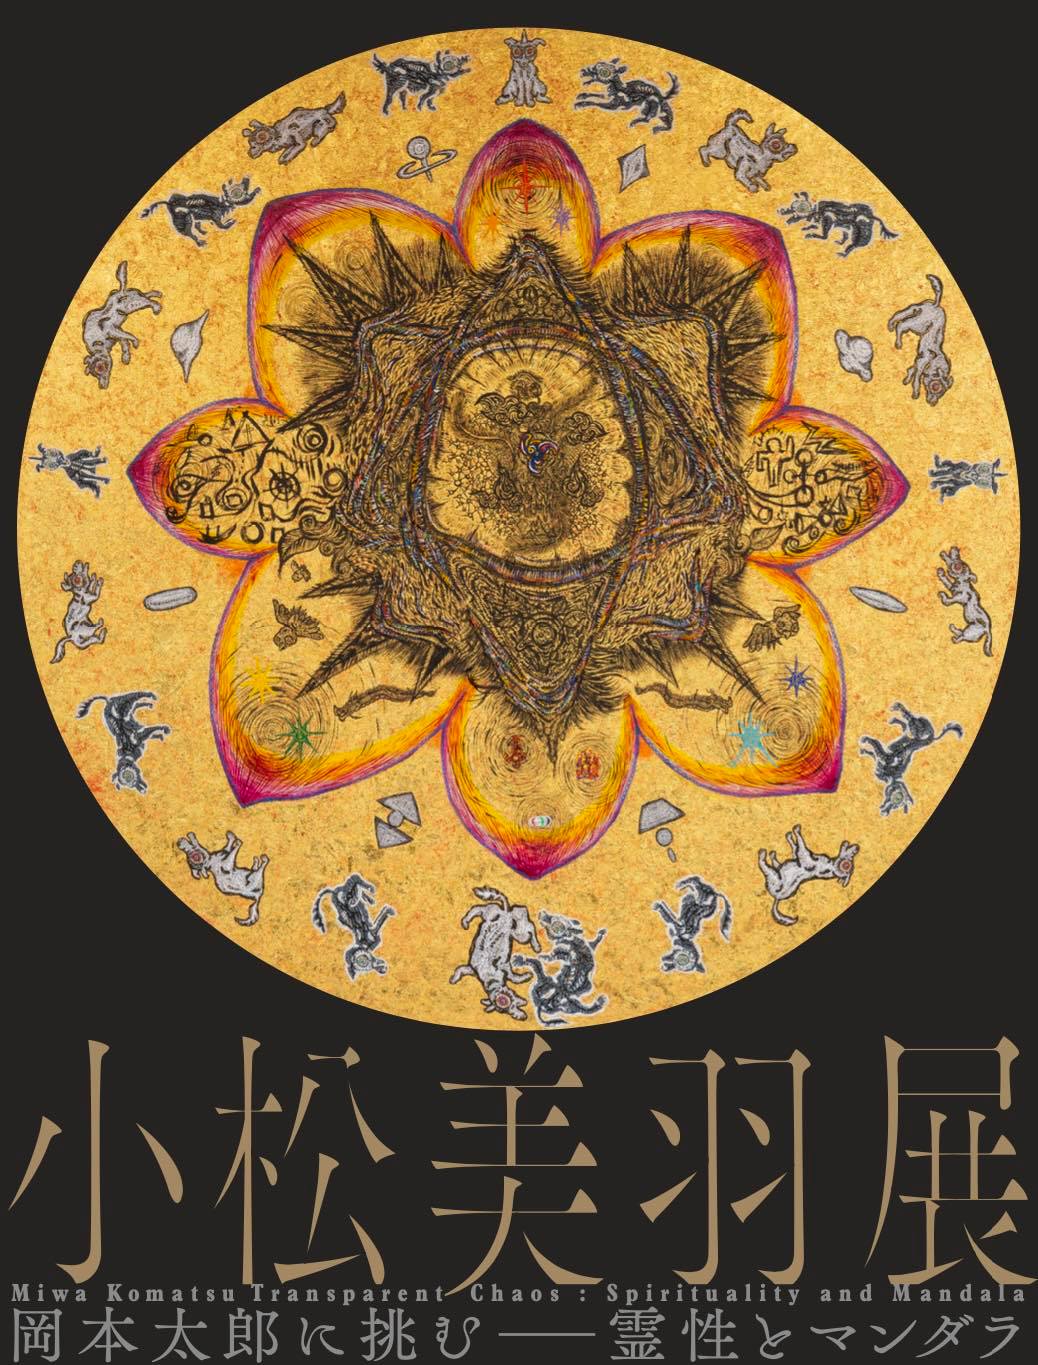 【Miwa Komatsu Exhibition】- Transparent Chaos : Spirituality and Mandala -